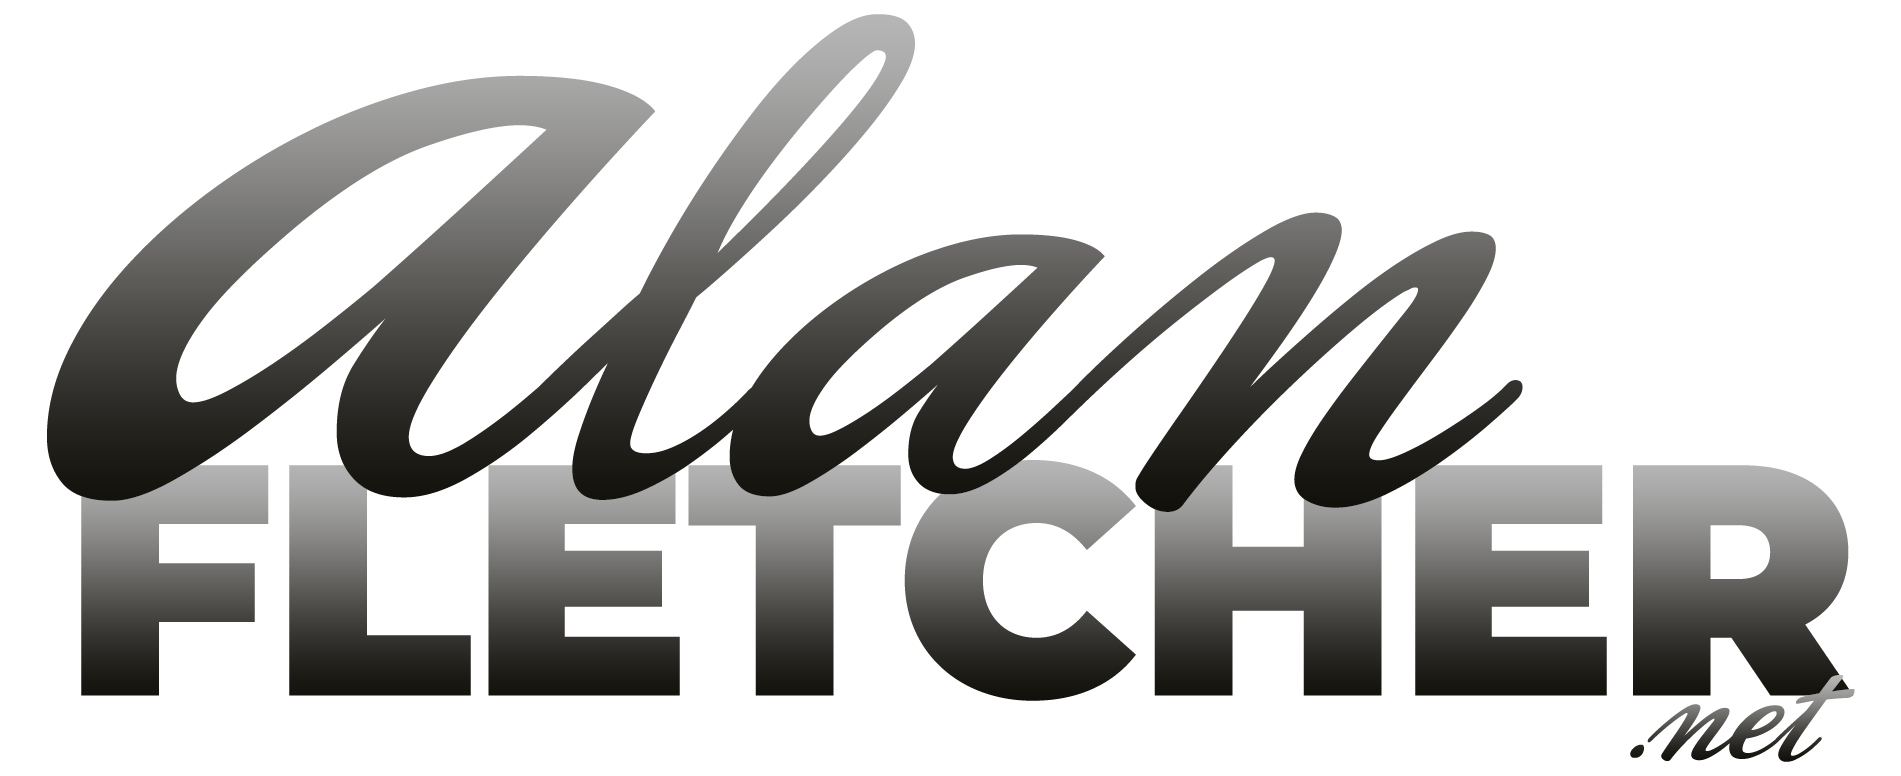 AlanFletcher.net